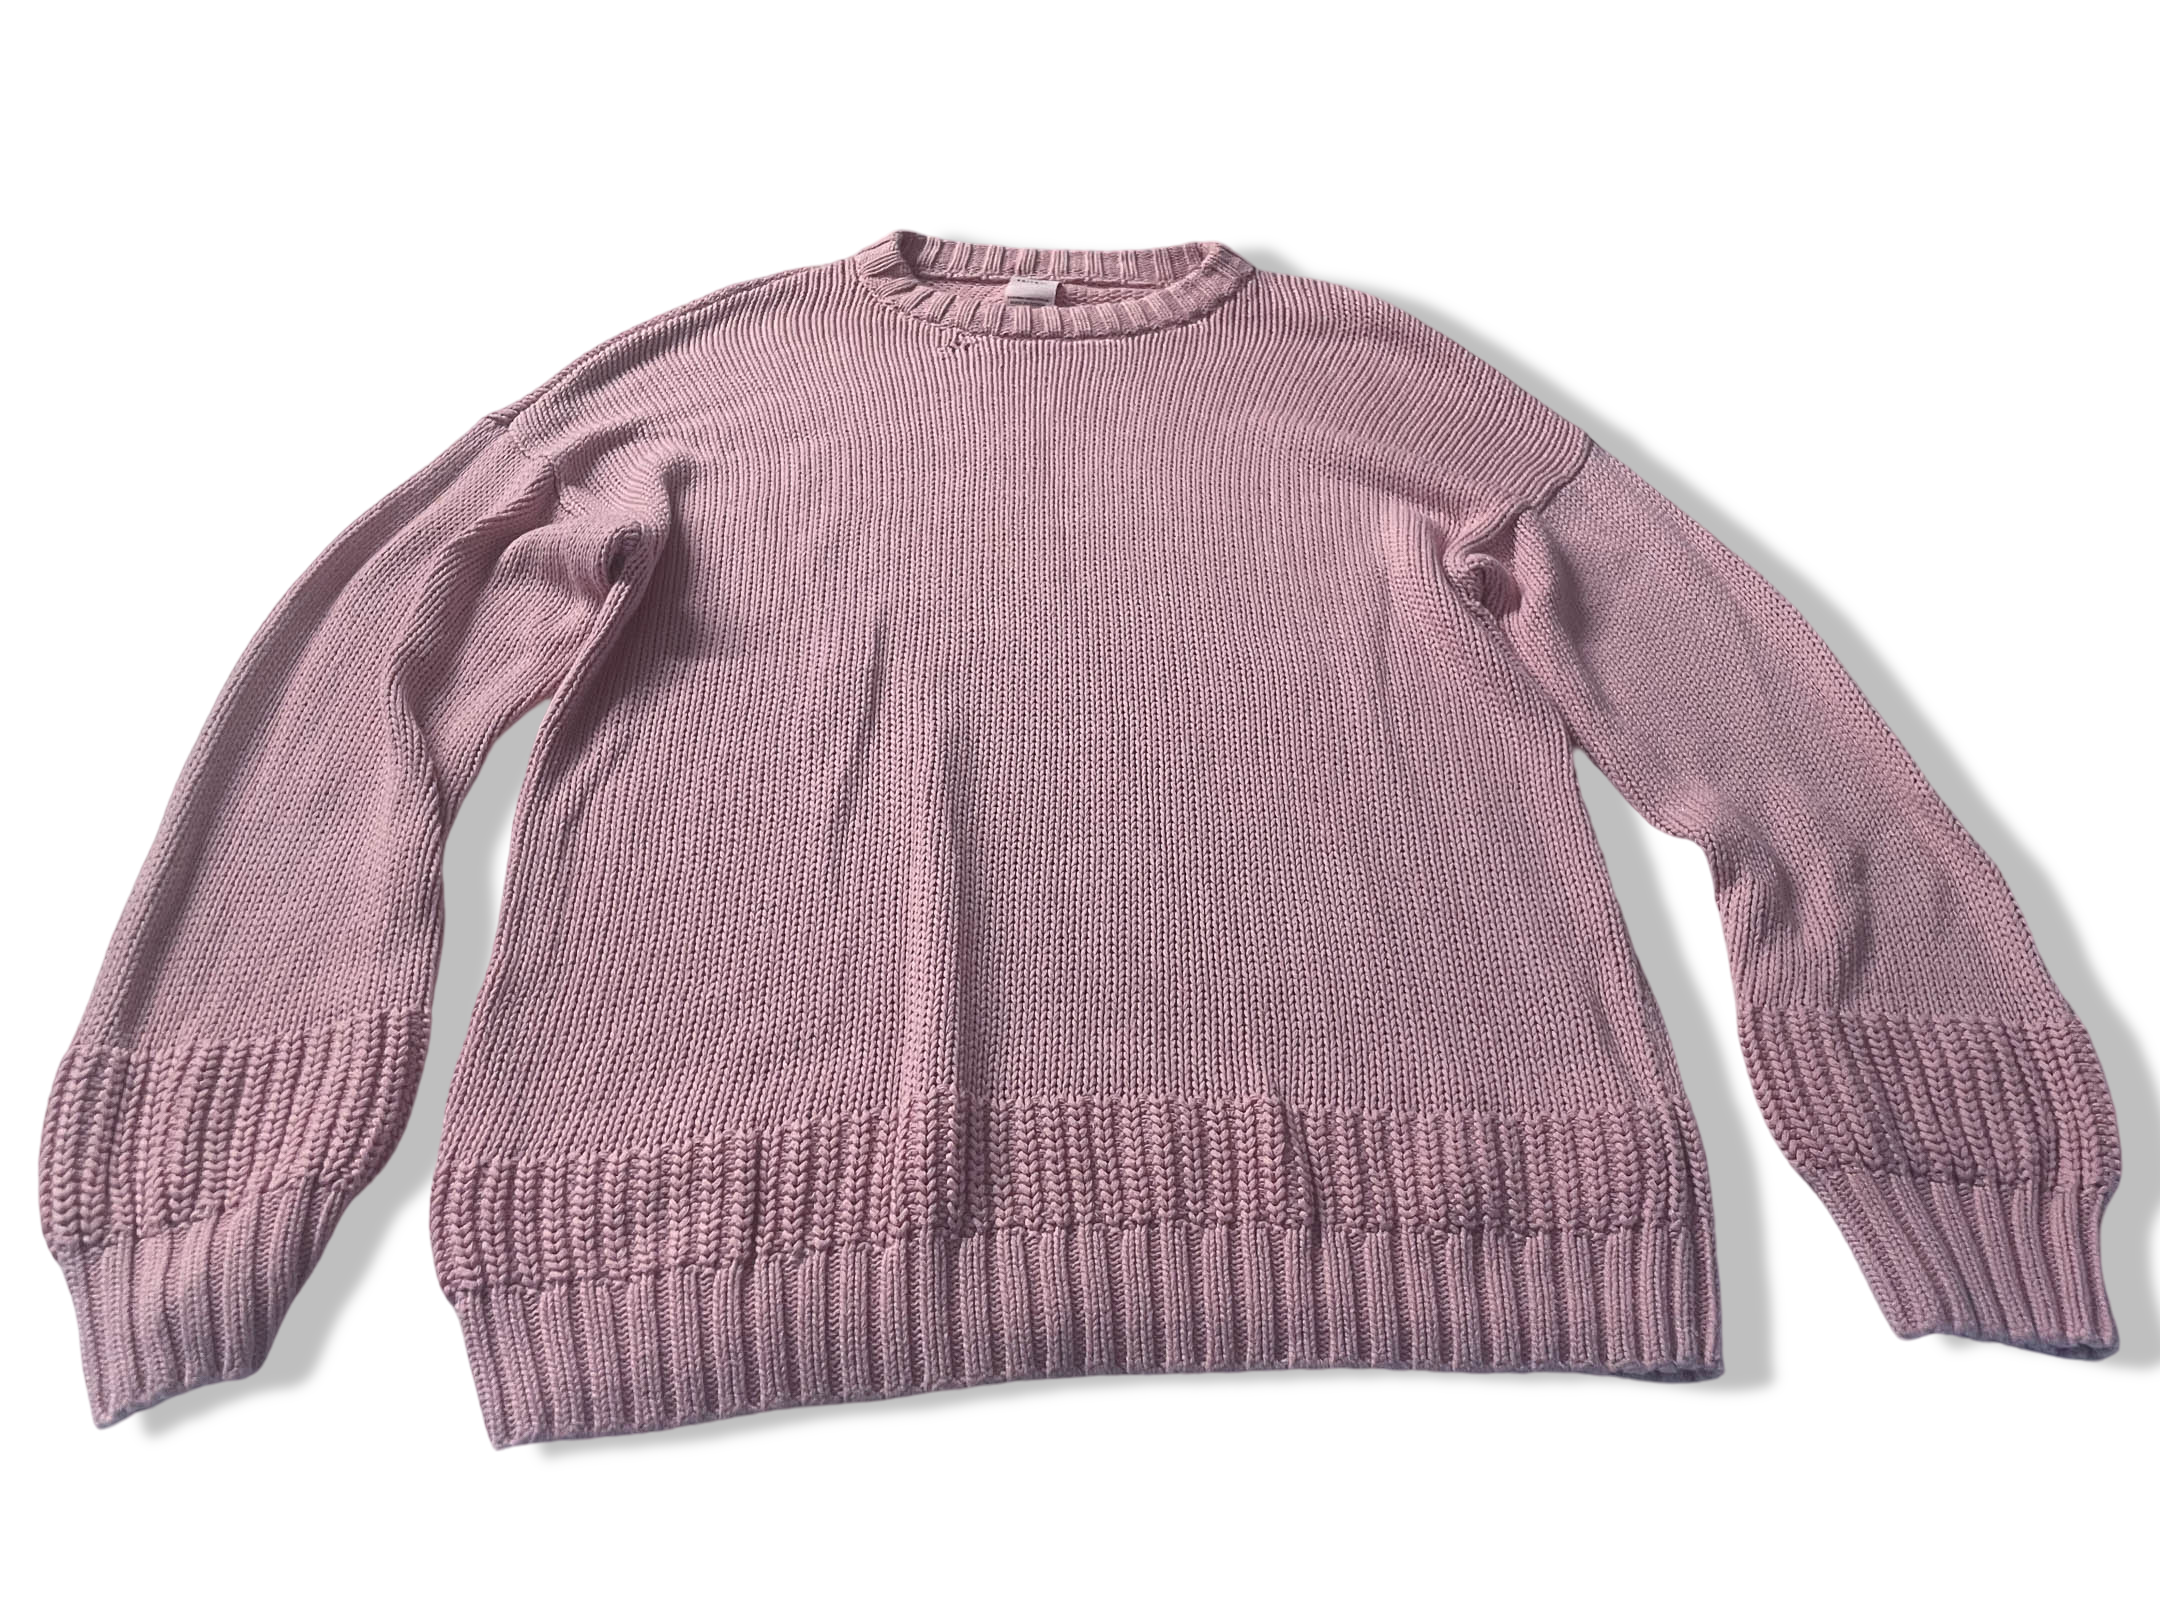 Vintage Girl zara knitwear pink winter sweater 13-14 years|L 27 W19|Made in Vietnam|SKU 4023